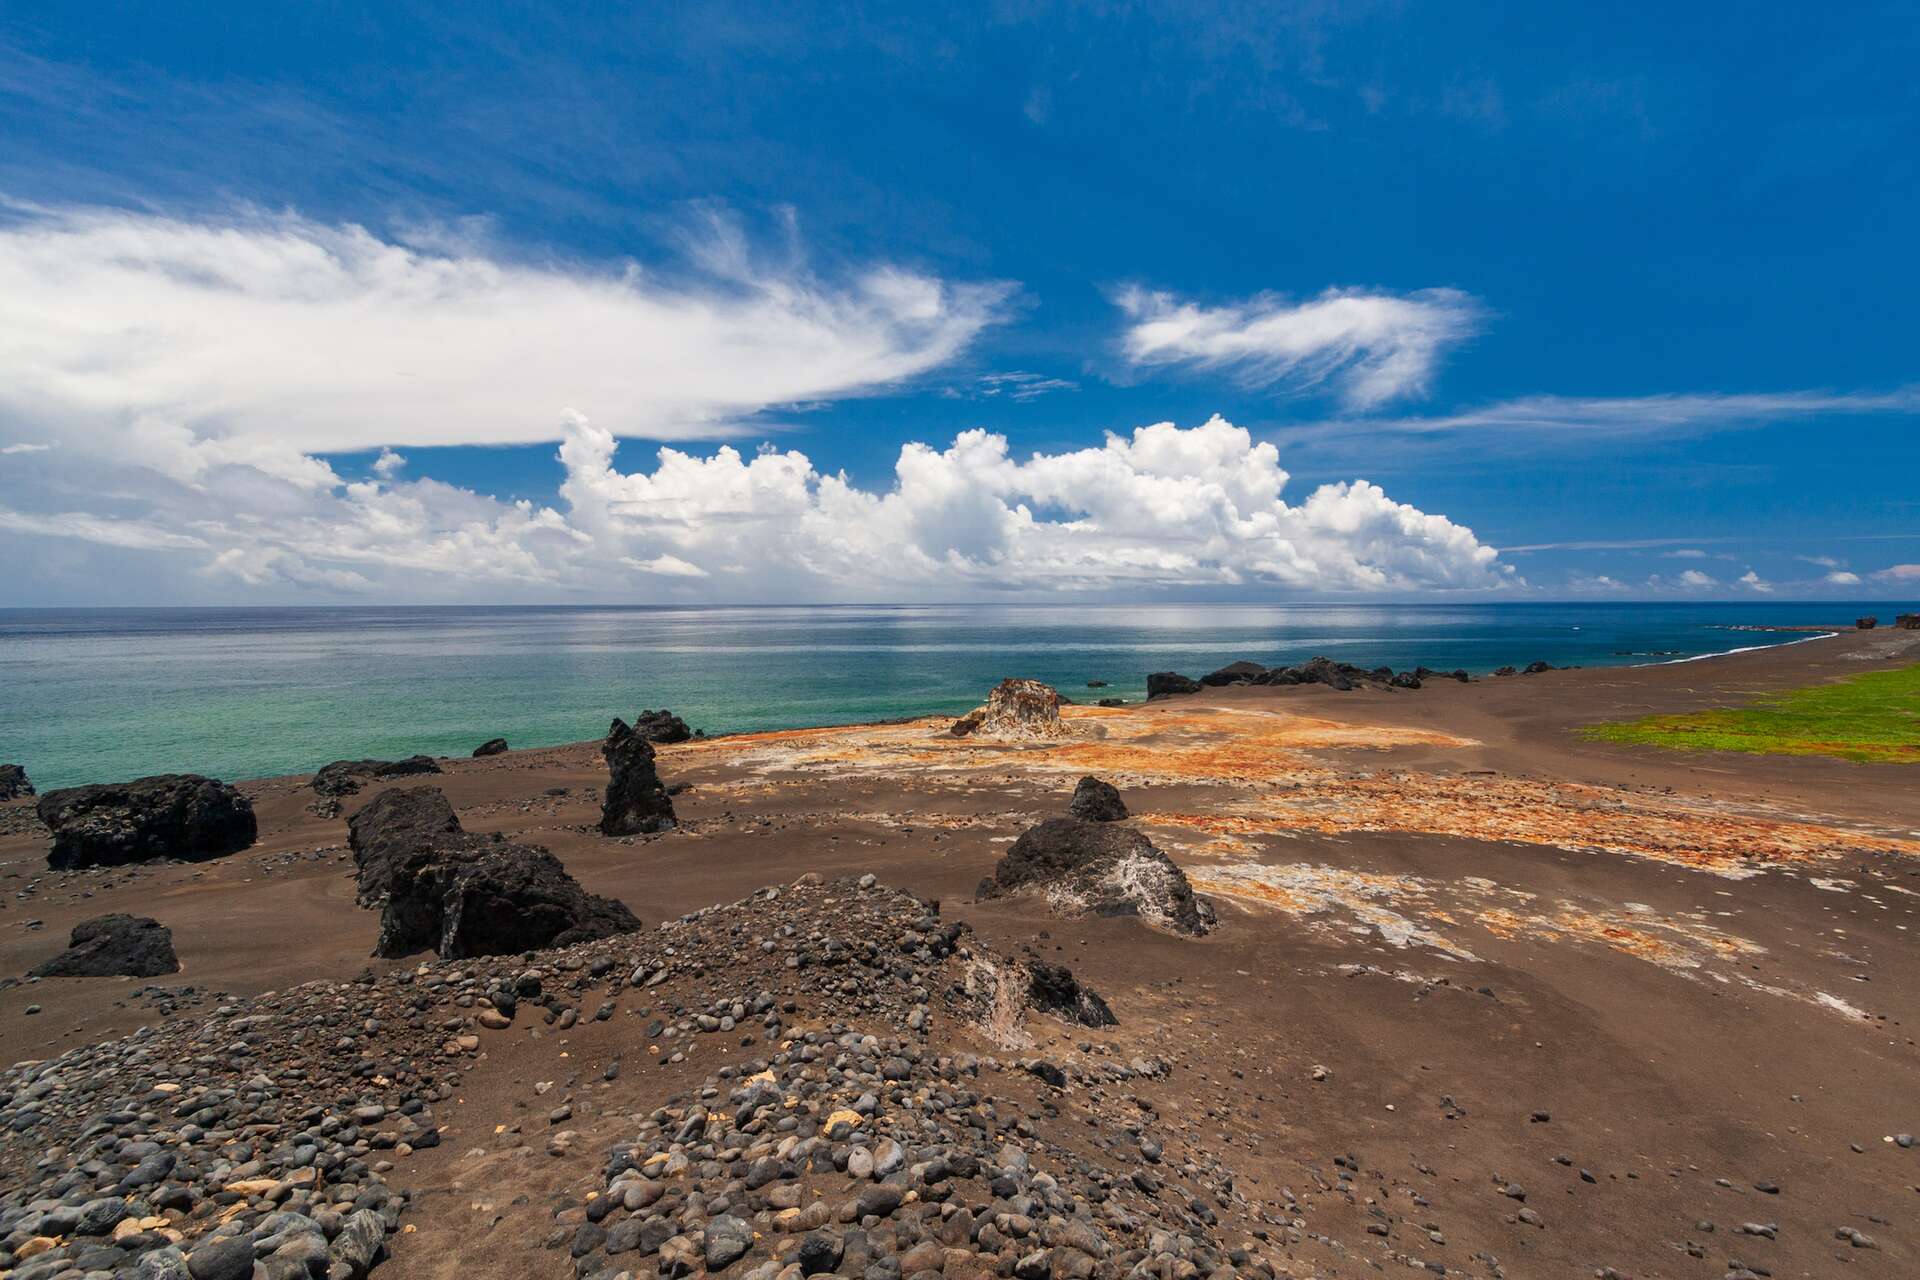 Images fascinantes de l'éruption sous-marine au large de l’île d’Iwo-Jima au Japon !